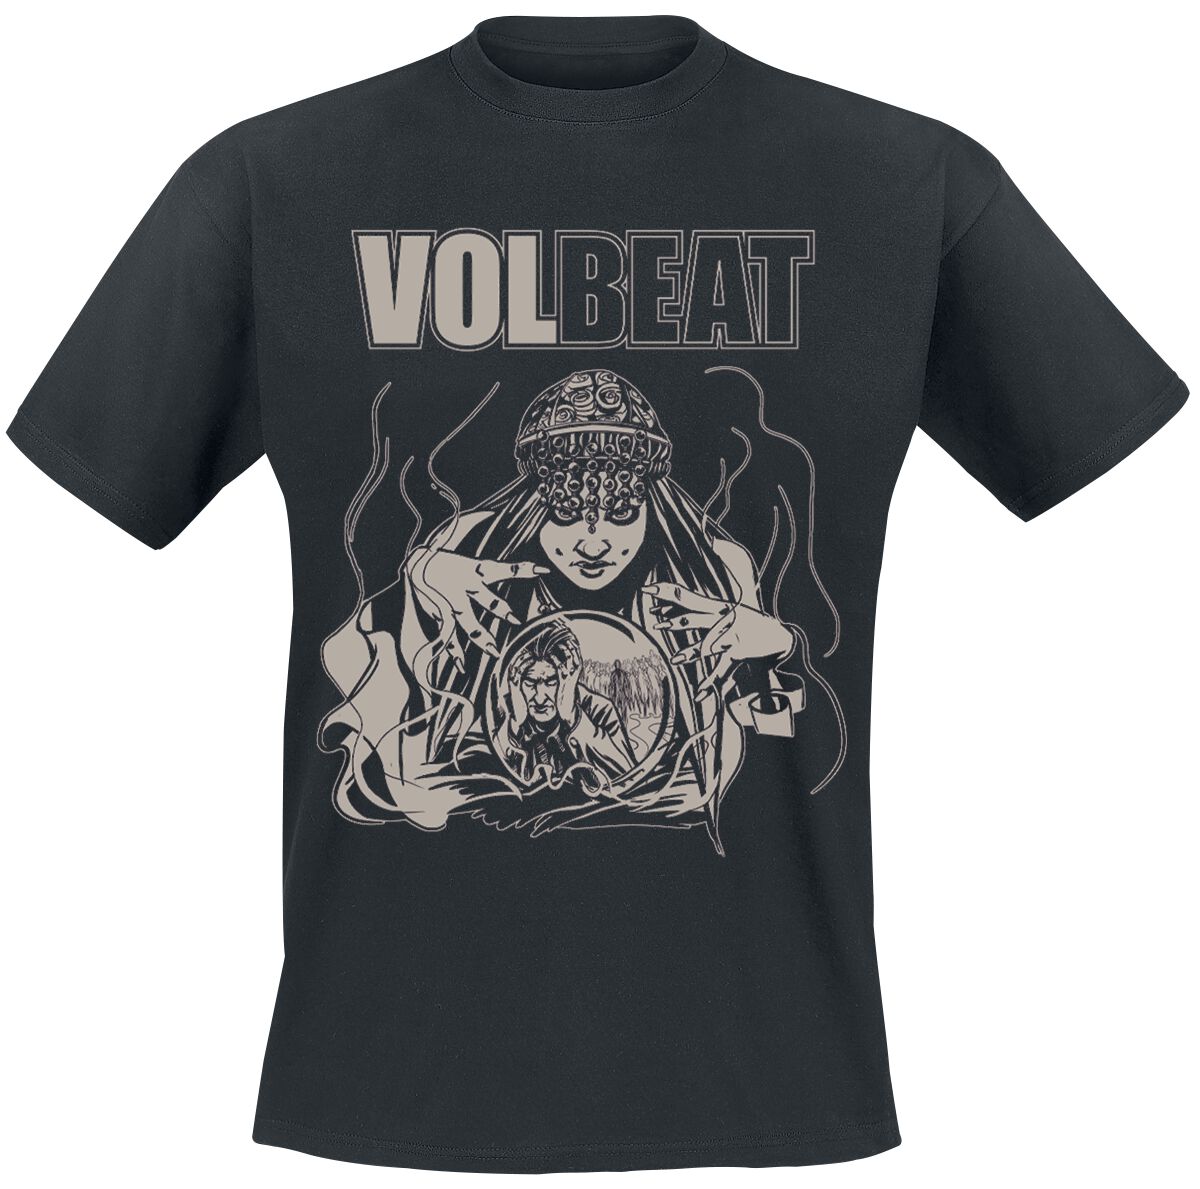 Volbeat T-Shirt - Future Crystal Ball - S bis XL - für Männer - Größe S - schwarz  - EMP exklusives Merchandise!